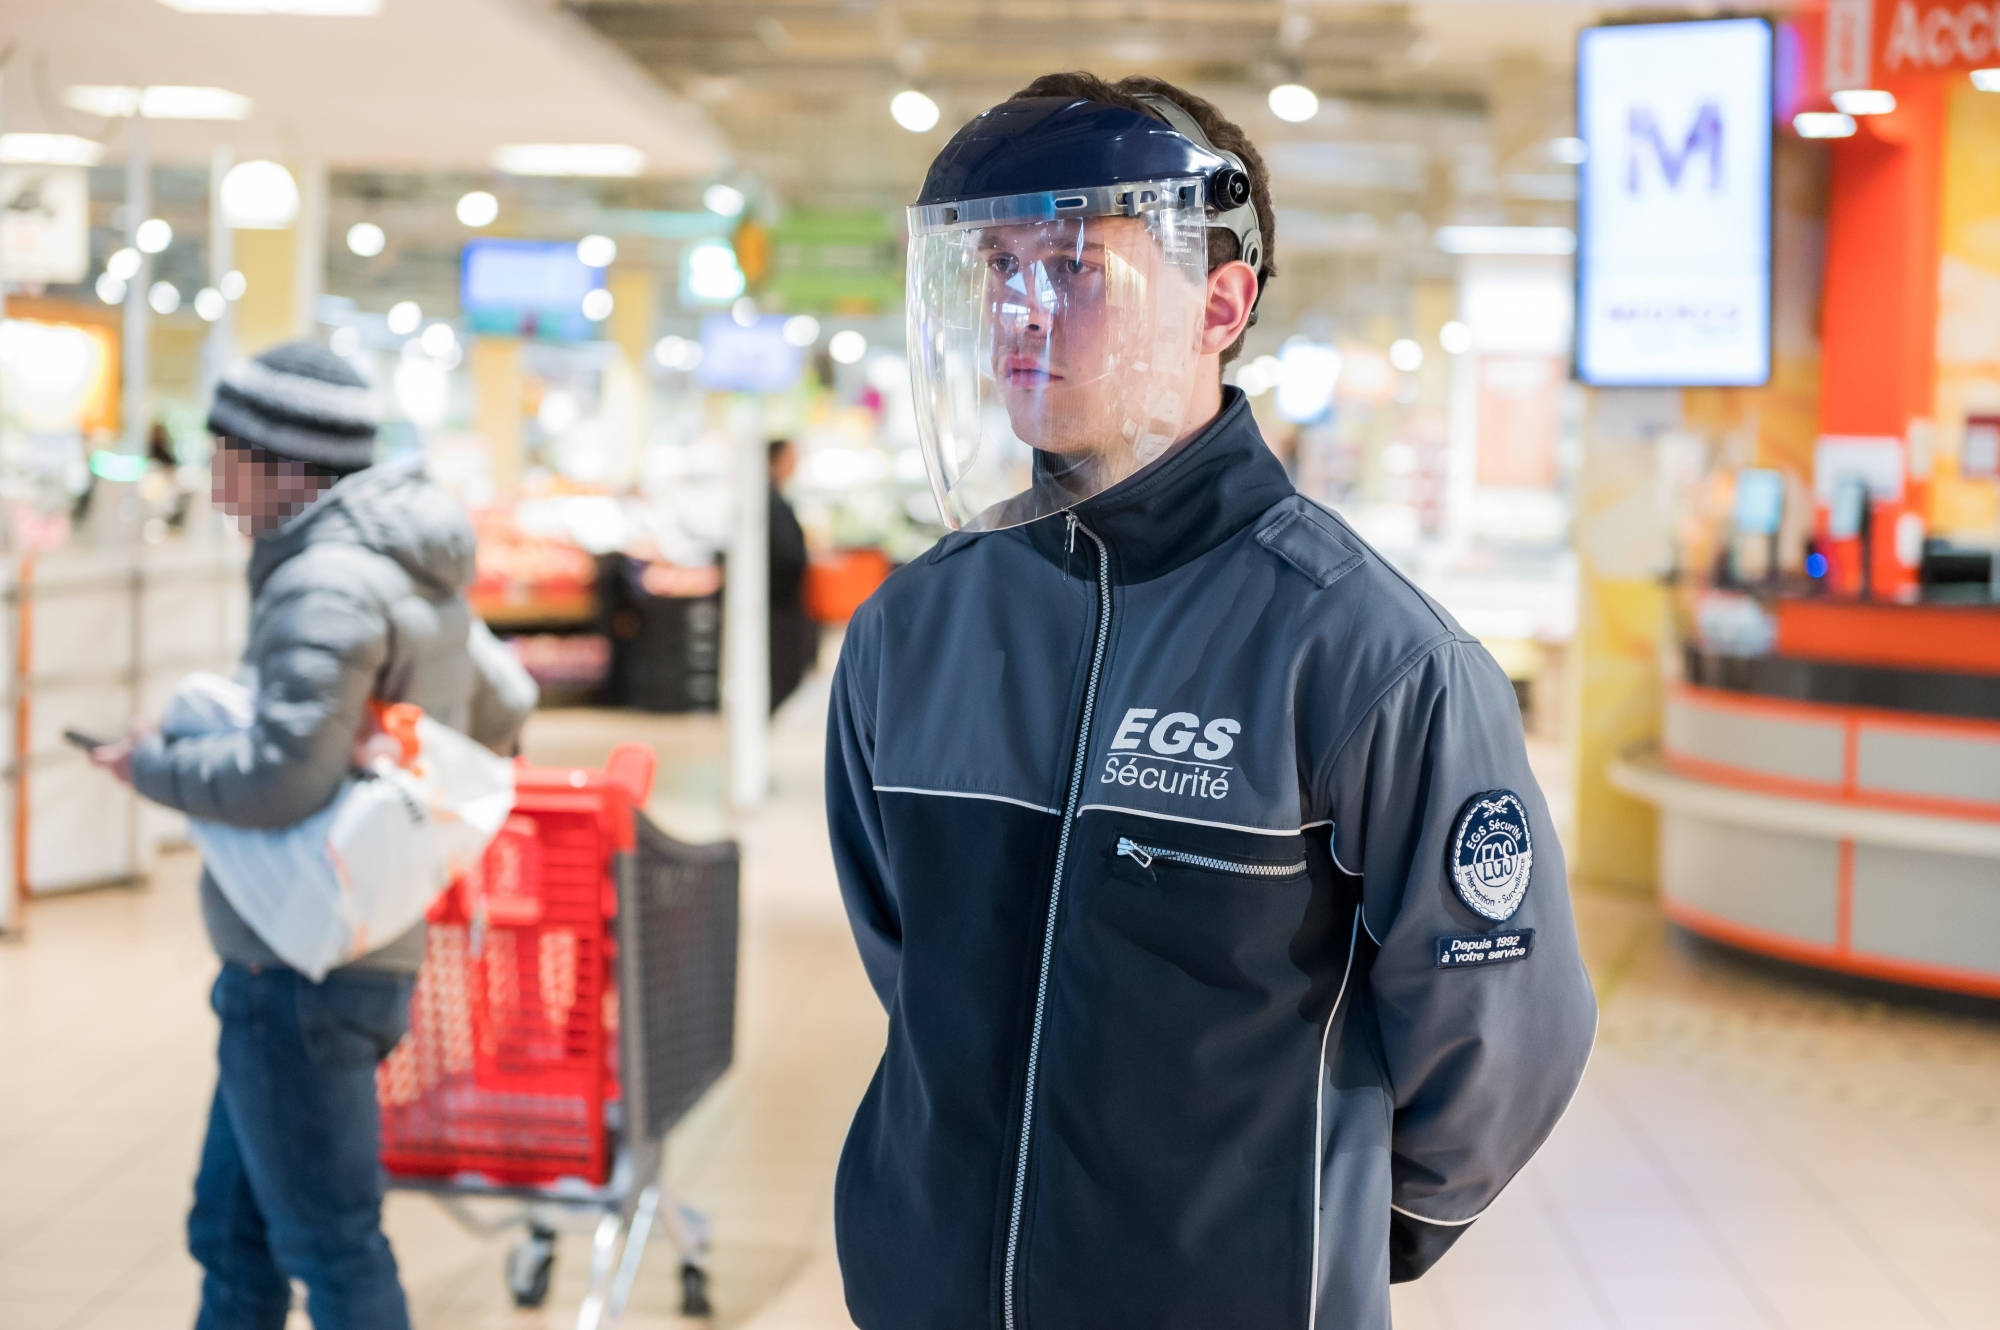 Pour contrôler le flux des clients, certains magasins d'alimentation recourent à des agents de sécurité. Ceux-ci se protègent aussi contre le nouveau coronavirus.